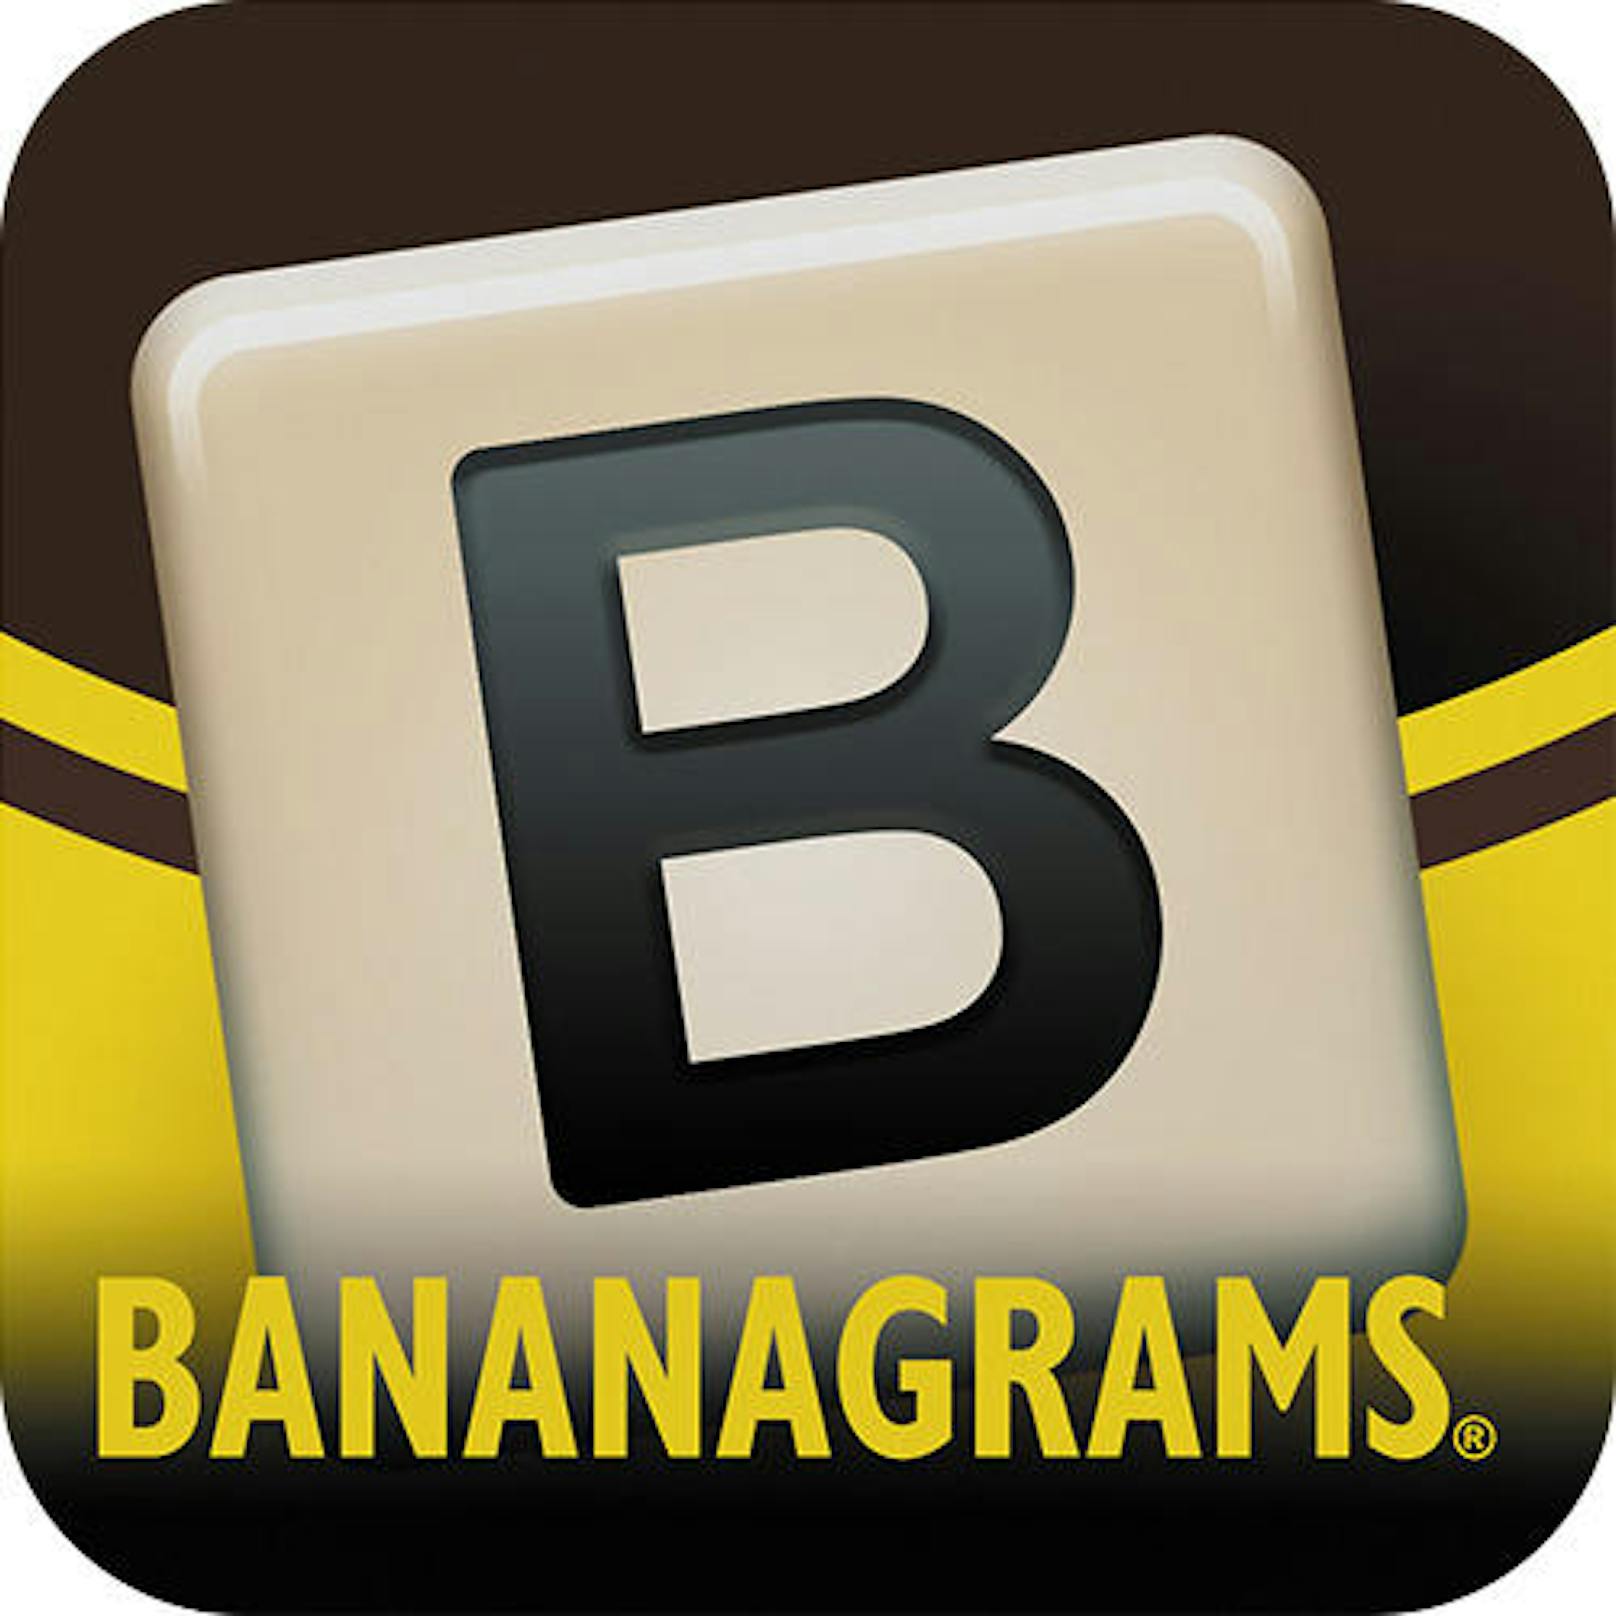 Bananagrams (Bananagrams) - iOS und Android - ein schnelles und rasantes  Anagramm-Spiel, bei dem die Spieler Wörter ohne Stift, Papier oder Brett zusammenfügen müssen. Das Spiel eignet sich perfekt für Familien und ist im Multiplayer, aber auch alleine spielbar.